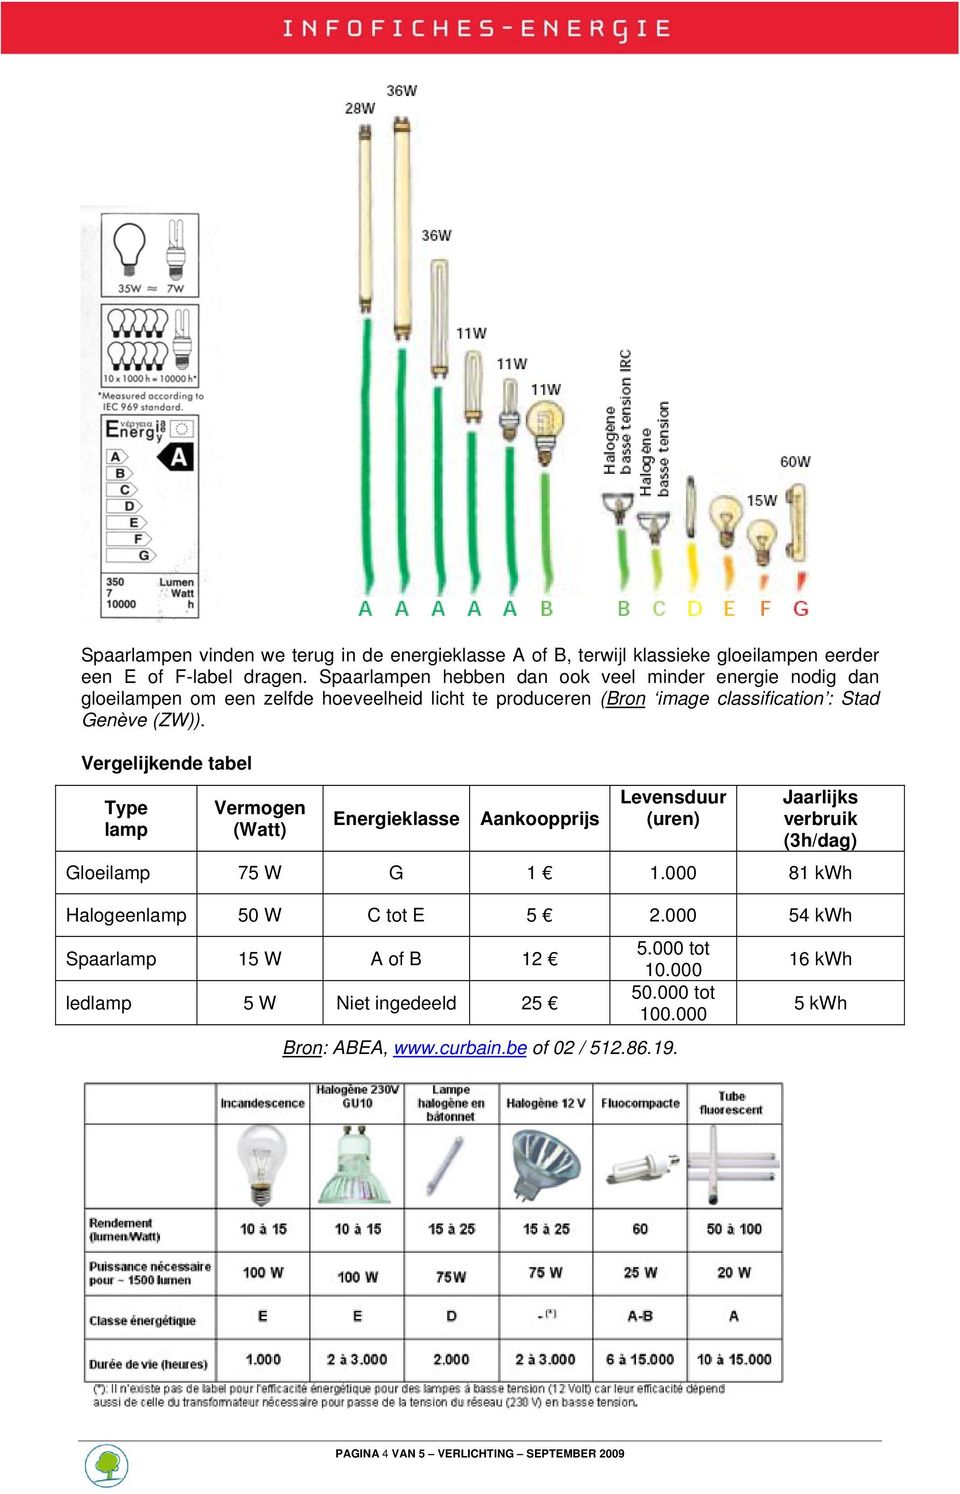 Vergelijkende tabel Type lamp Vermogen (Watt) Energieklasse Aankoopprijs Levensduur (uren) Jaarlijks verbruik (3h/dag) Gloeilamp 75 W G 1 1.